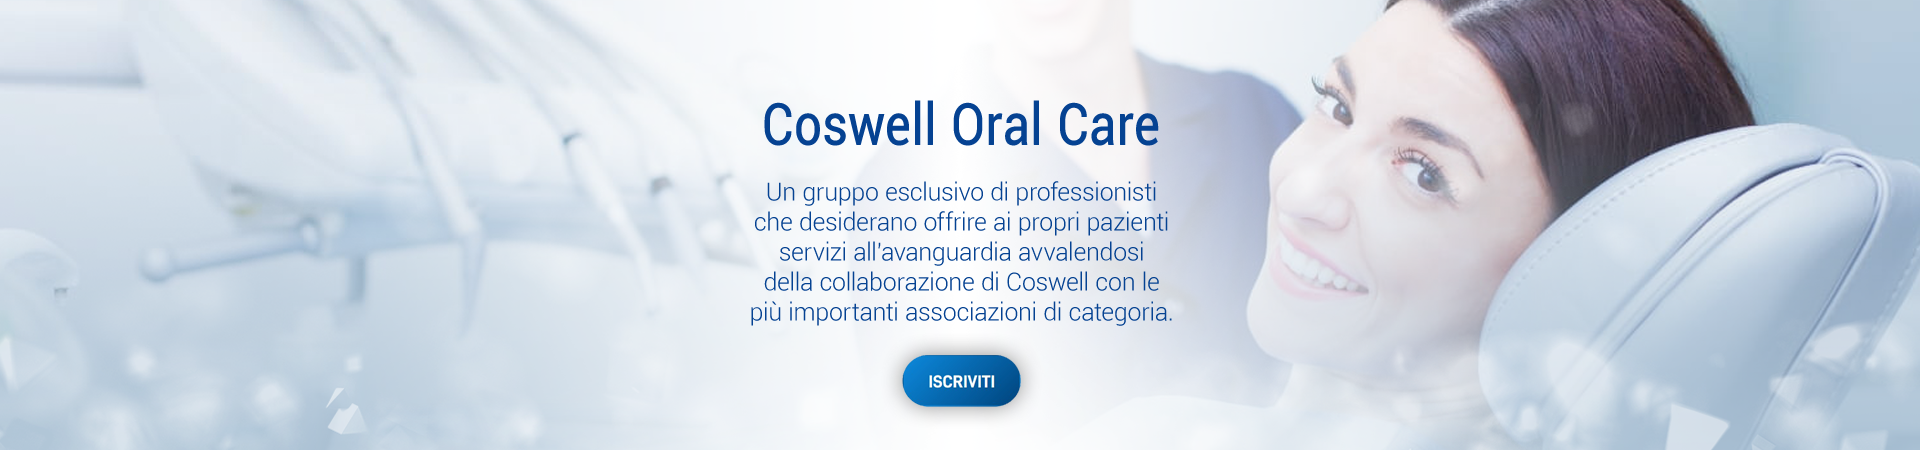 Coswell Oral Care - Un gruppo esclusivo di professionisti che desiderano offrire ai propri pazienti servizi all'avanguardia.